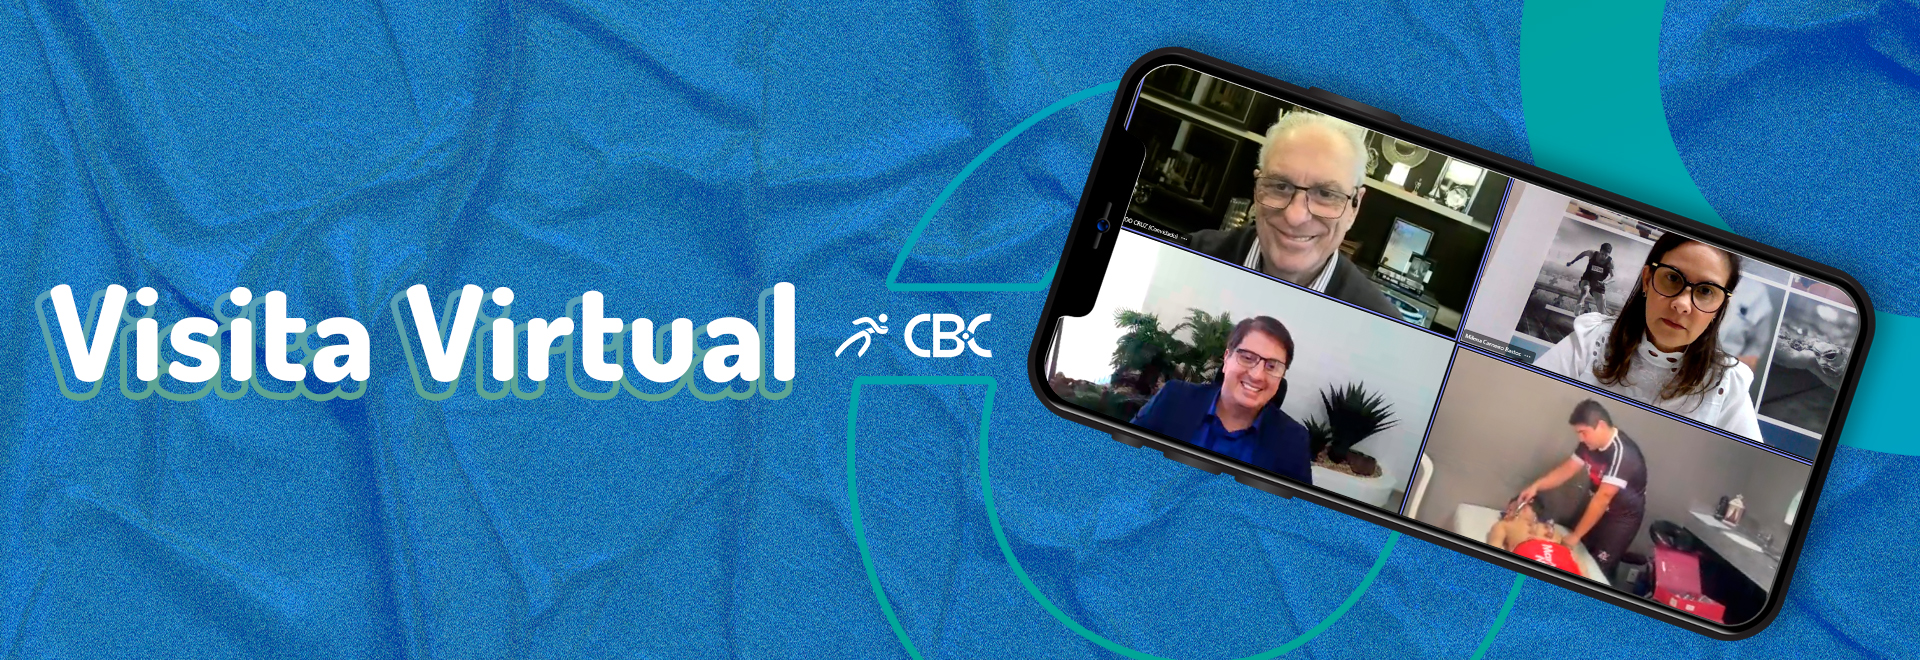 CBC realiza 1ª Visita Virtual para acompanhamento de projeto do Eixo RH